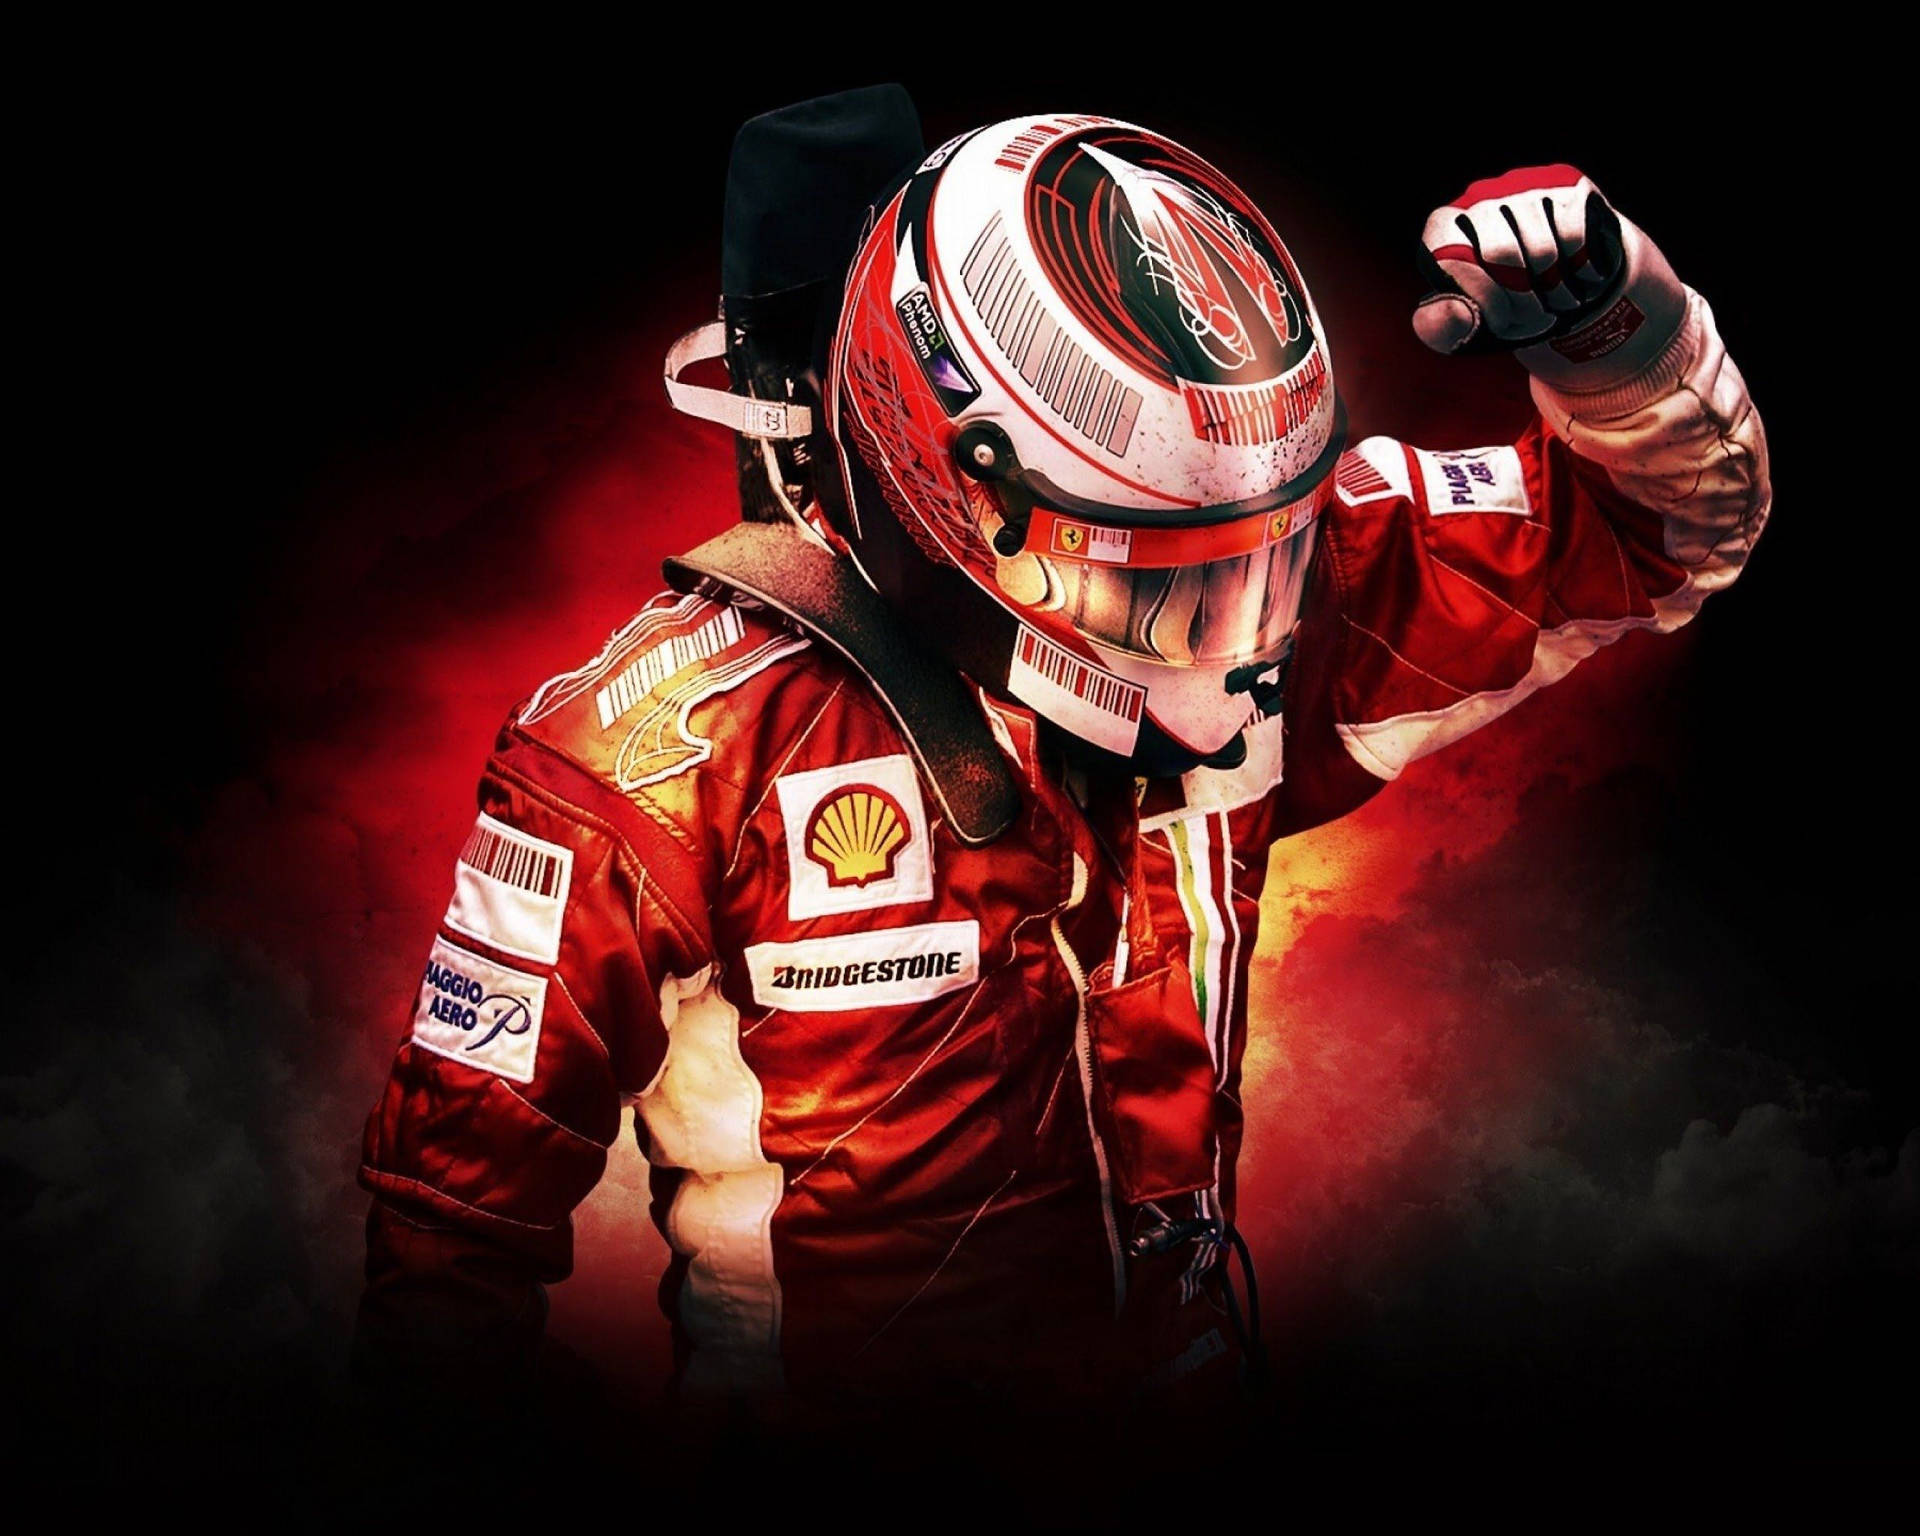 Imagens De Michael Schumacher